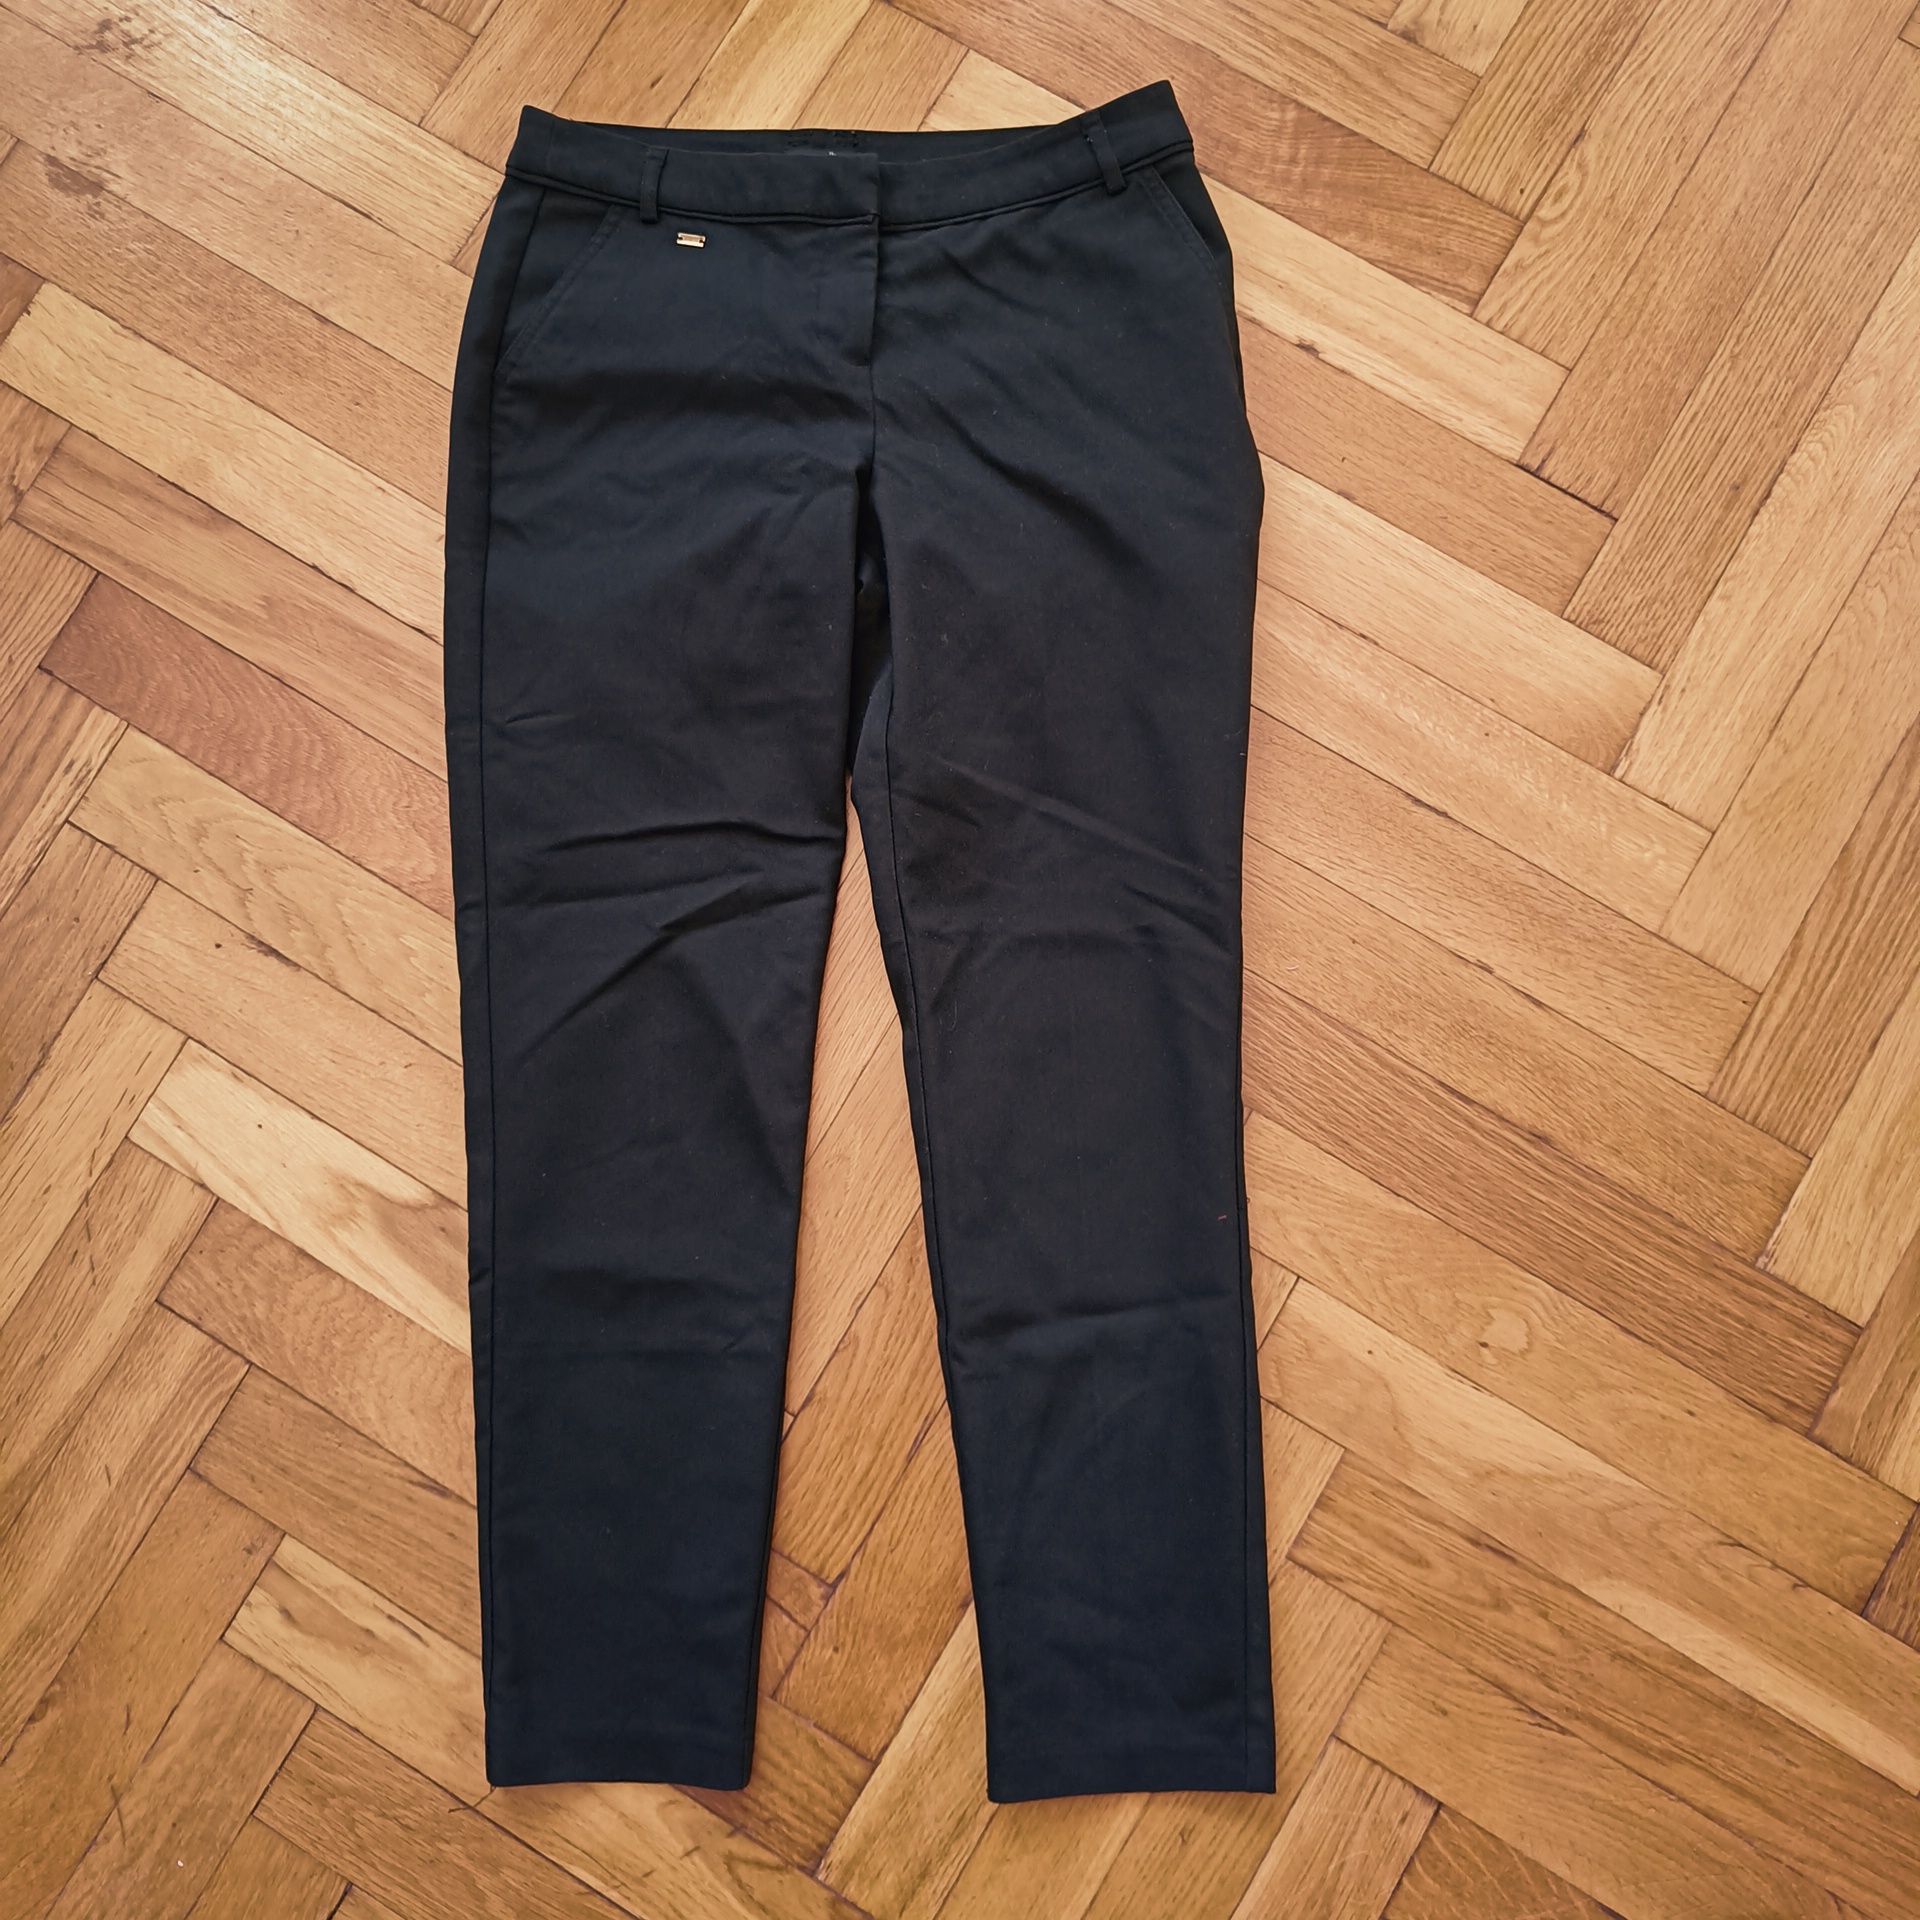 Spodnie czarne Wallis eleganckie biurowe 38